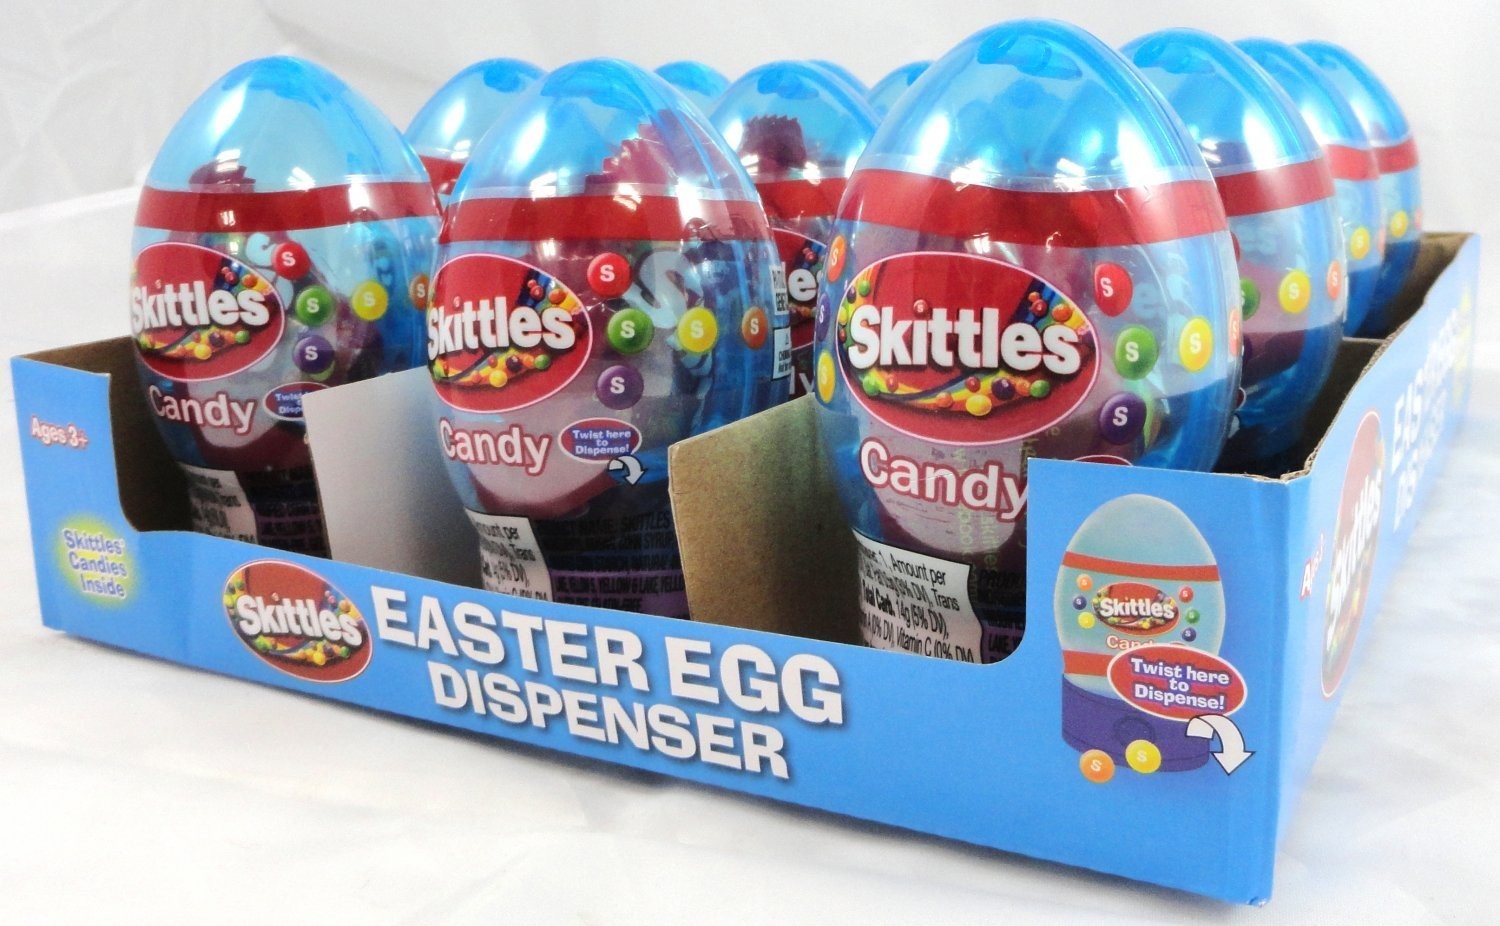 Skittles Skittles Candy Egg Dispenser